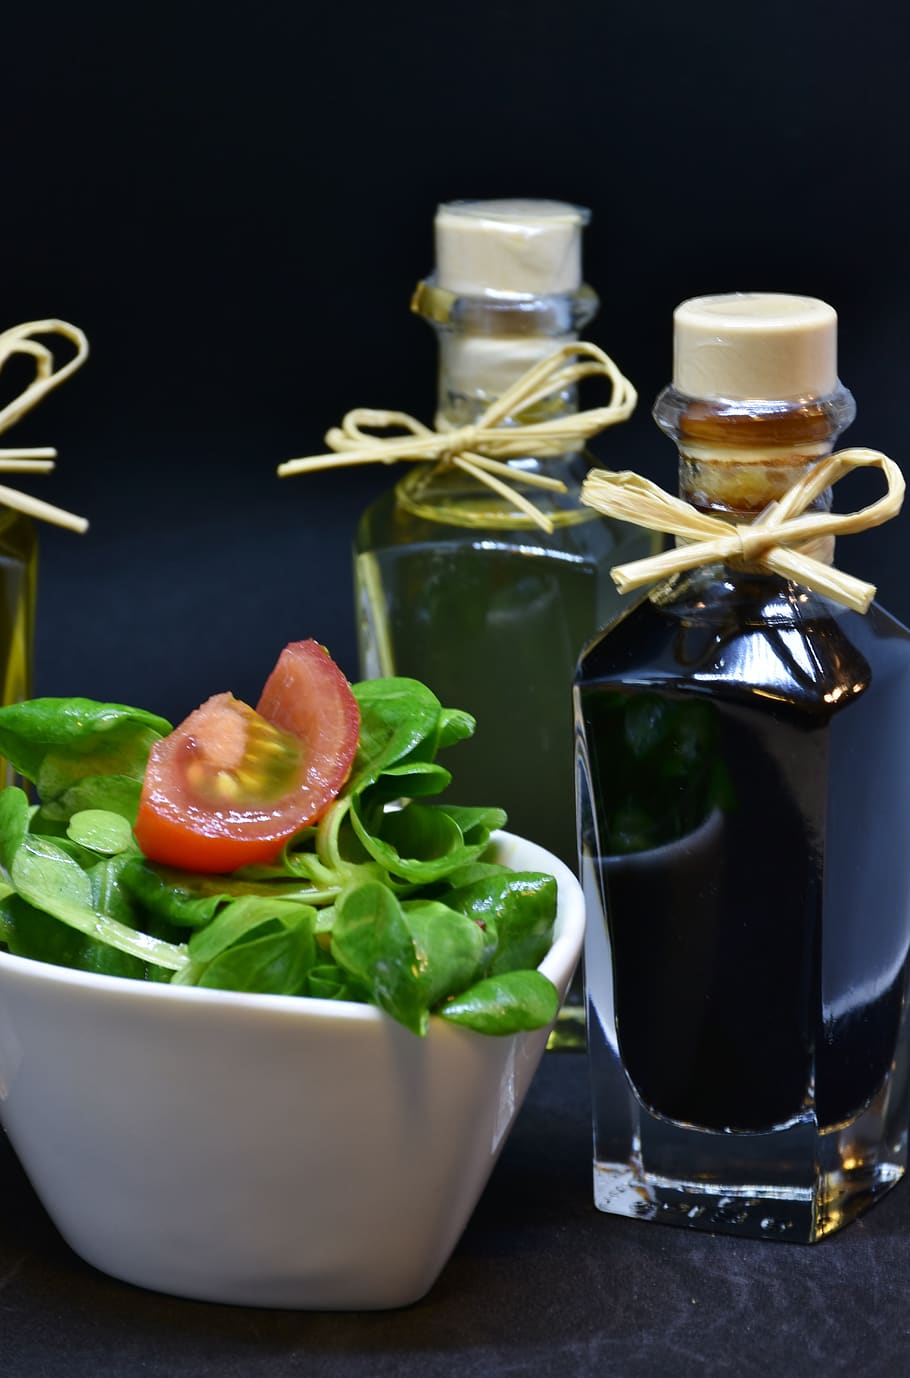 oil, olive oil, walnut oil, vinegar, spices, lamb's lettuce, arugula, drink, bottle, glass